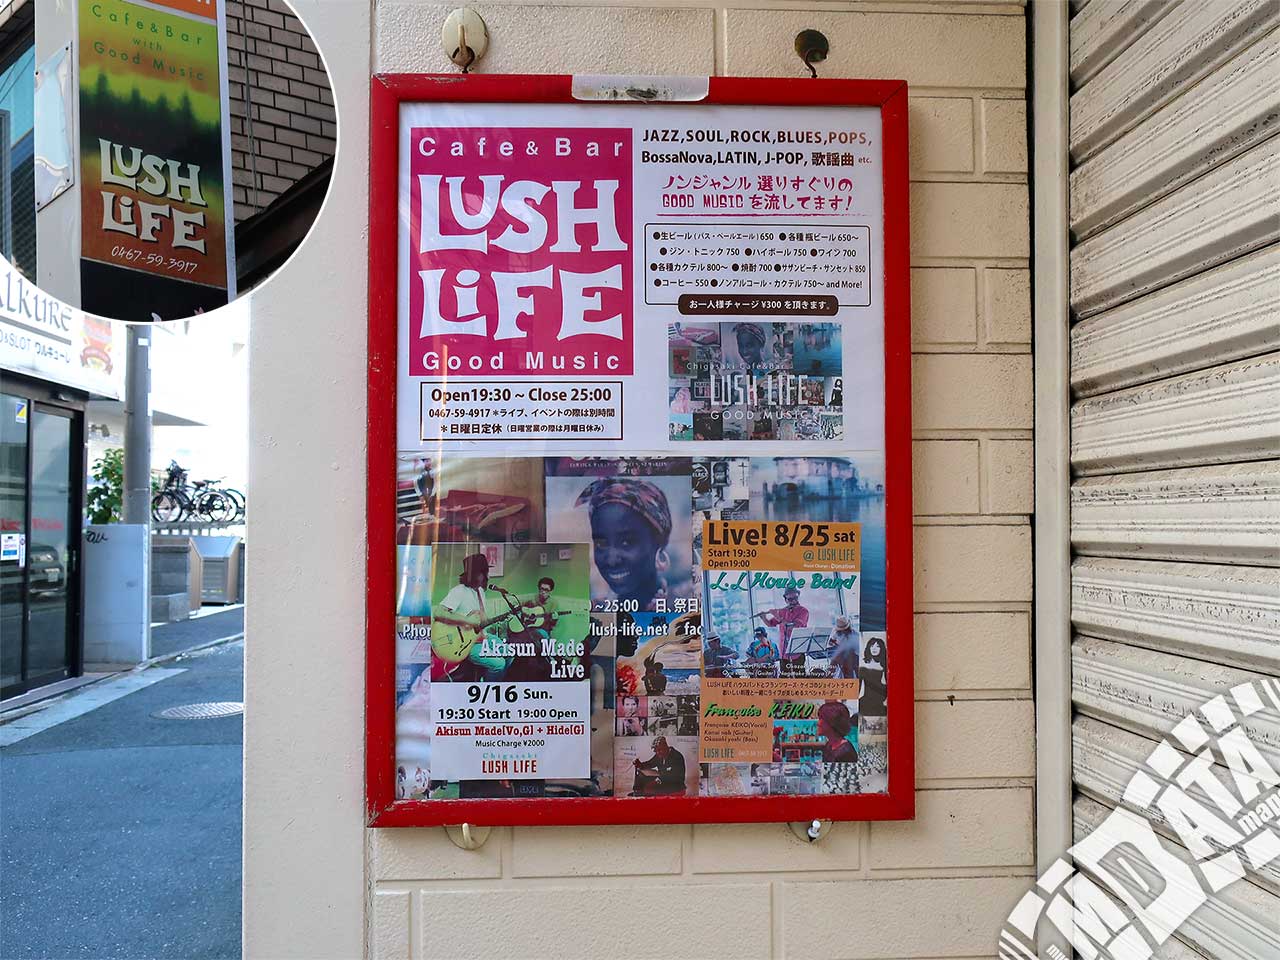 茅ヶ崎LUSH LIFEの写真 撮影日:2018/10/3 Photo taken on 2018/10/03